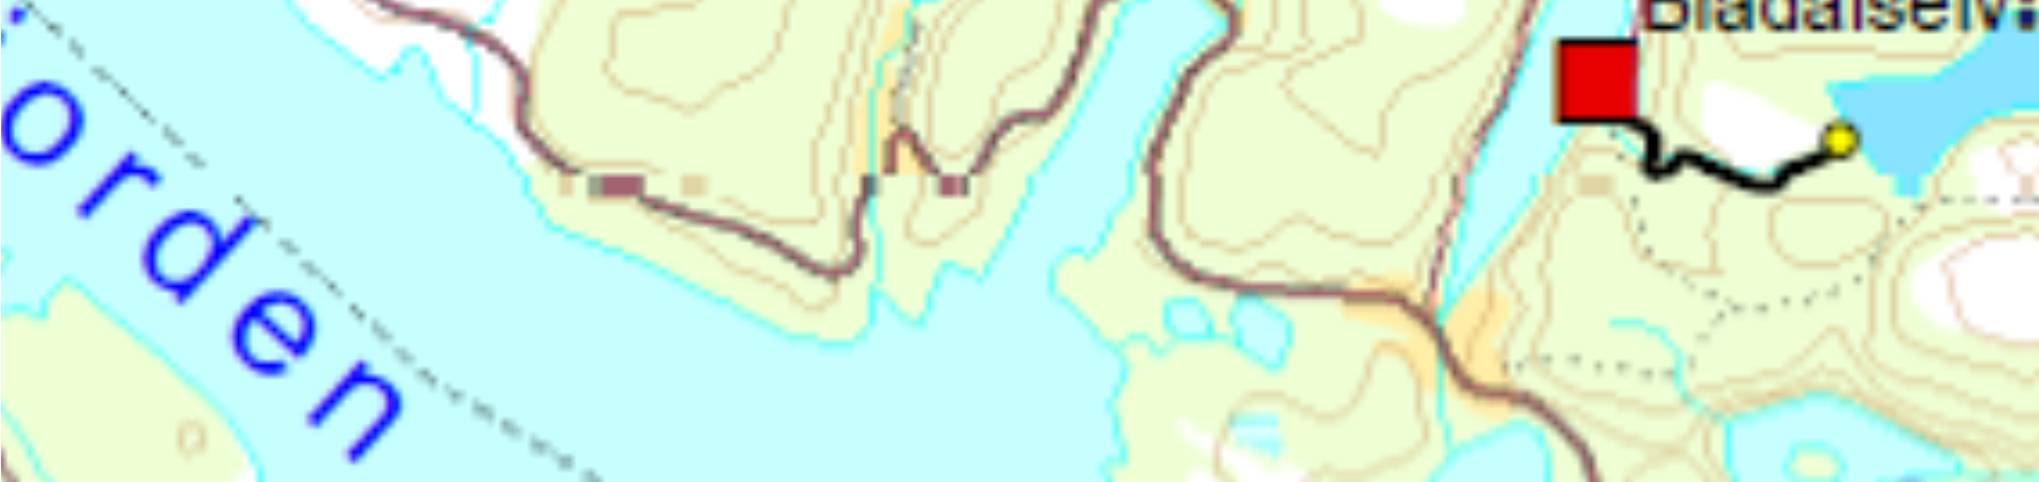 Side 4/27 Figur 1 Oversikt over dei seks kraftverka (markert med grøn firkant med raud runding). Fylkesdelplanen skildrar området slik: Masfjorden delområde har eit stort potensial for småkraft.